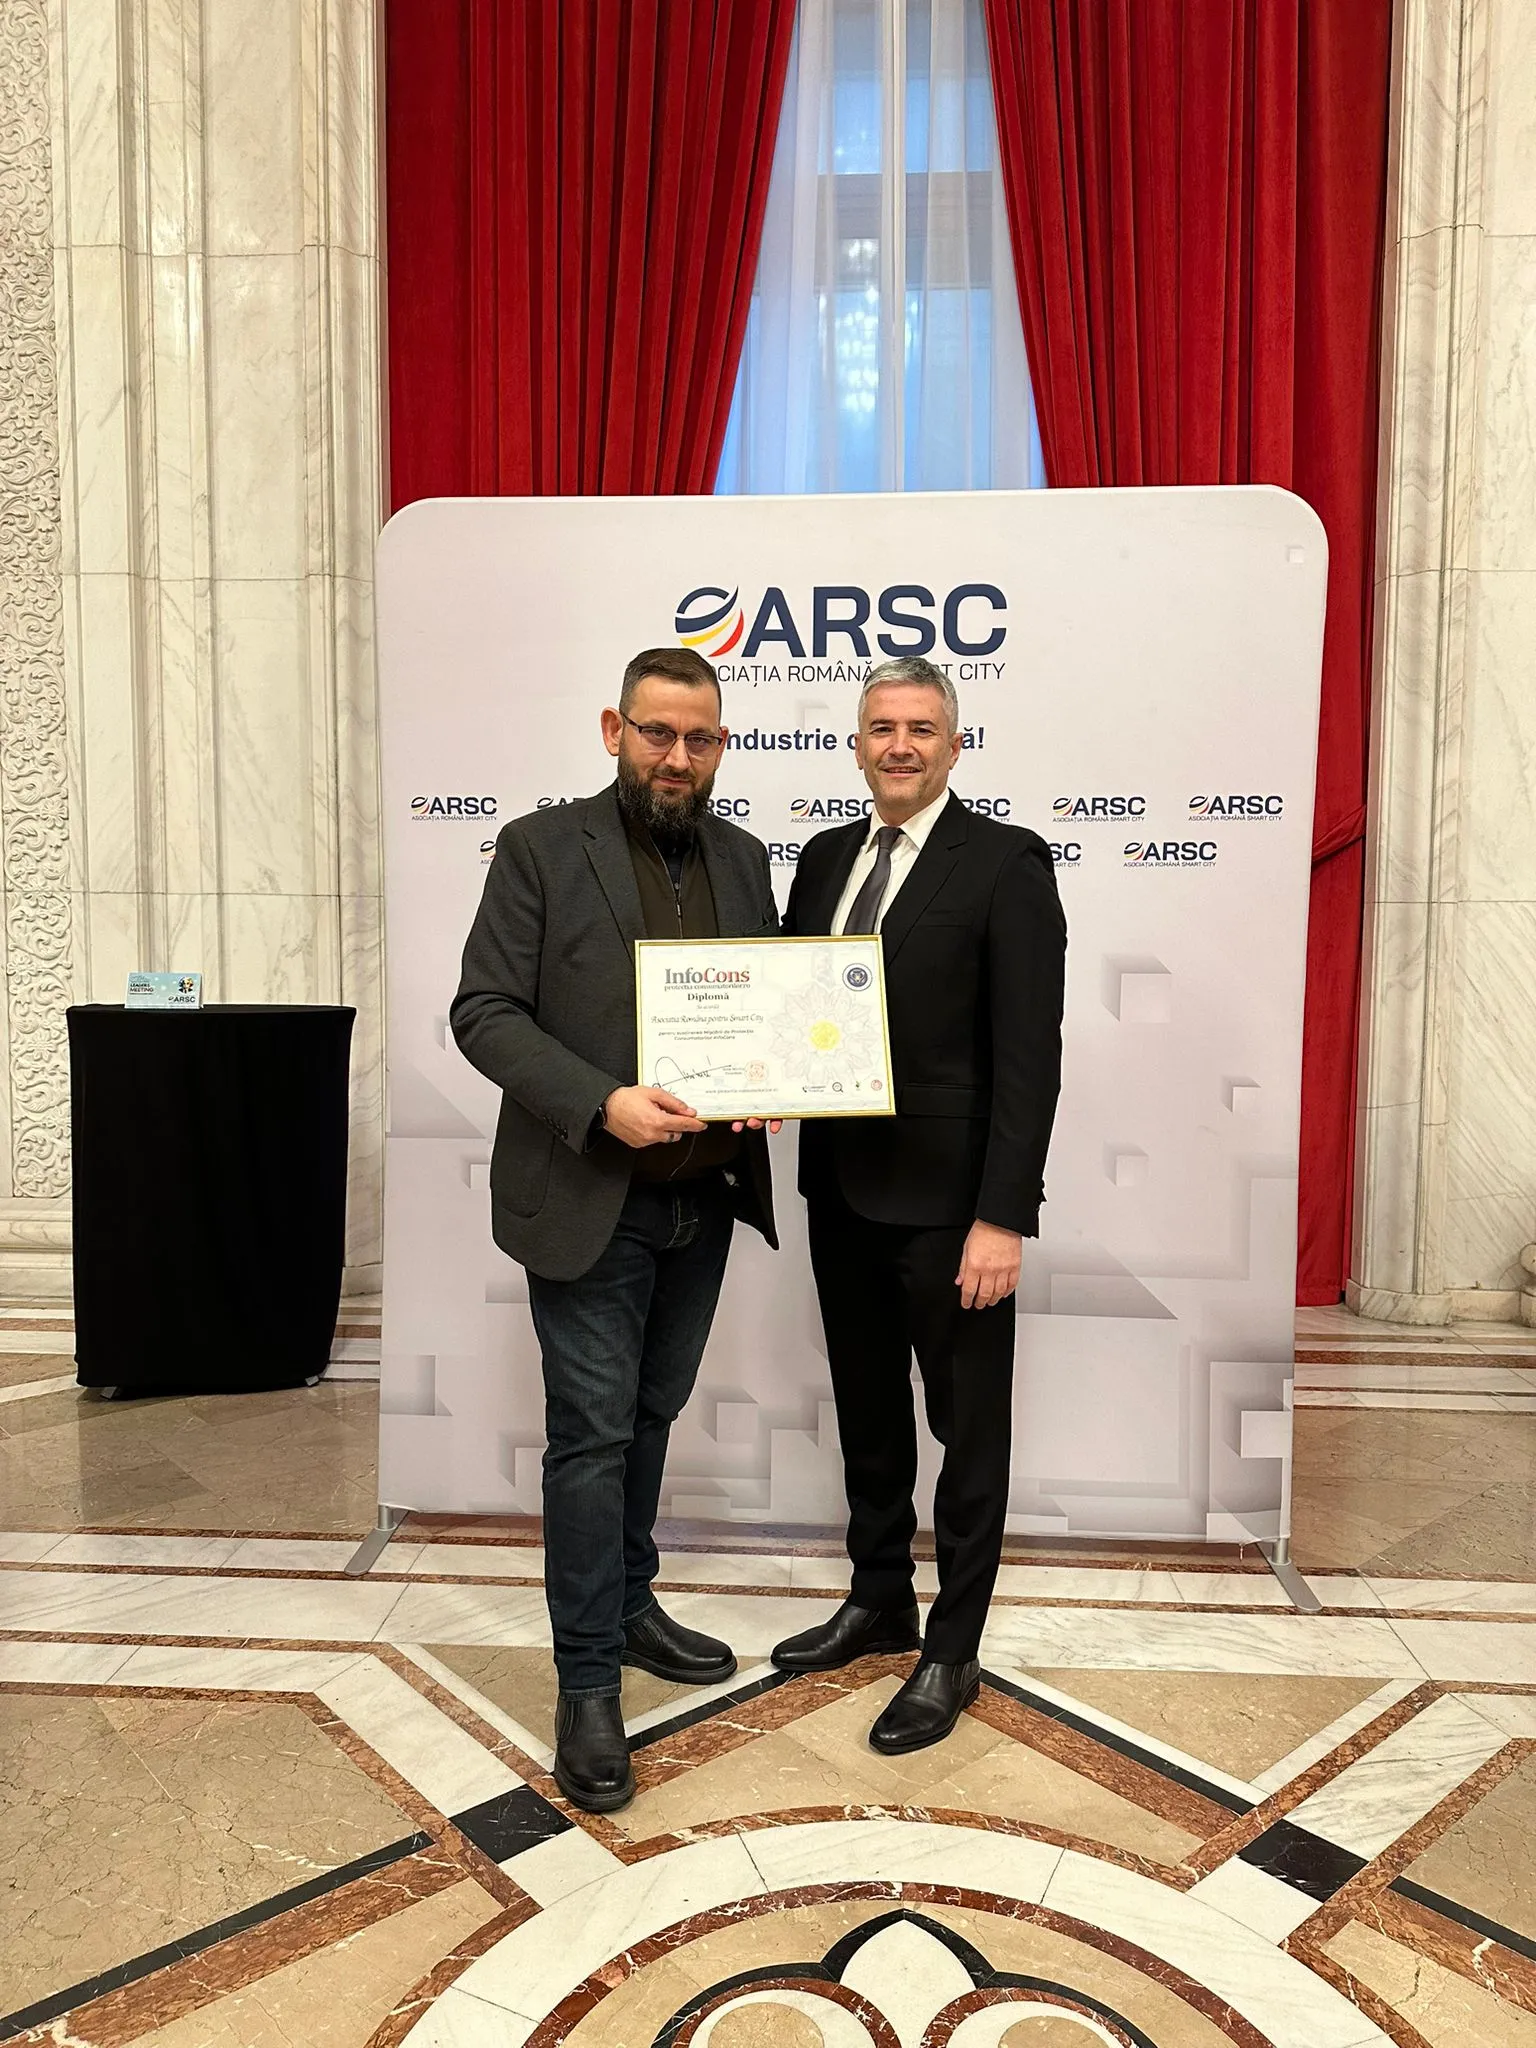 Președintele InfoCons, Sorin Mierlea, a acordat o diplomă Presedintelui ARSC , Eduard Dumitrascu